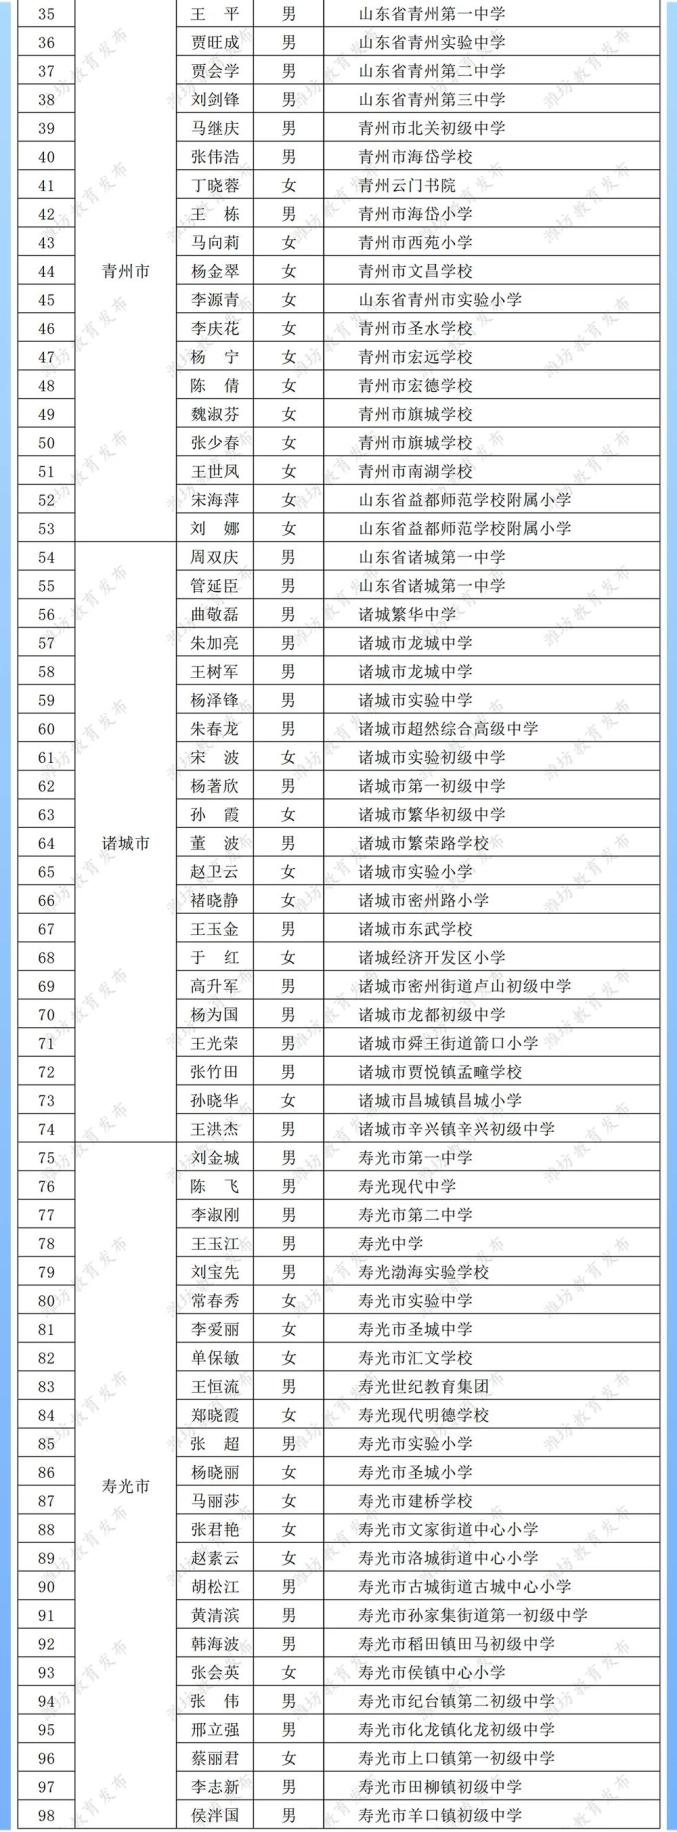 武乡二中全体老师名单图片